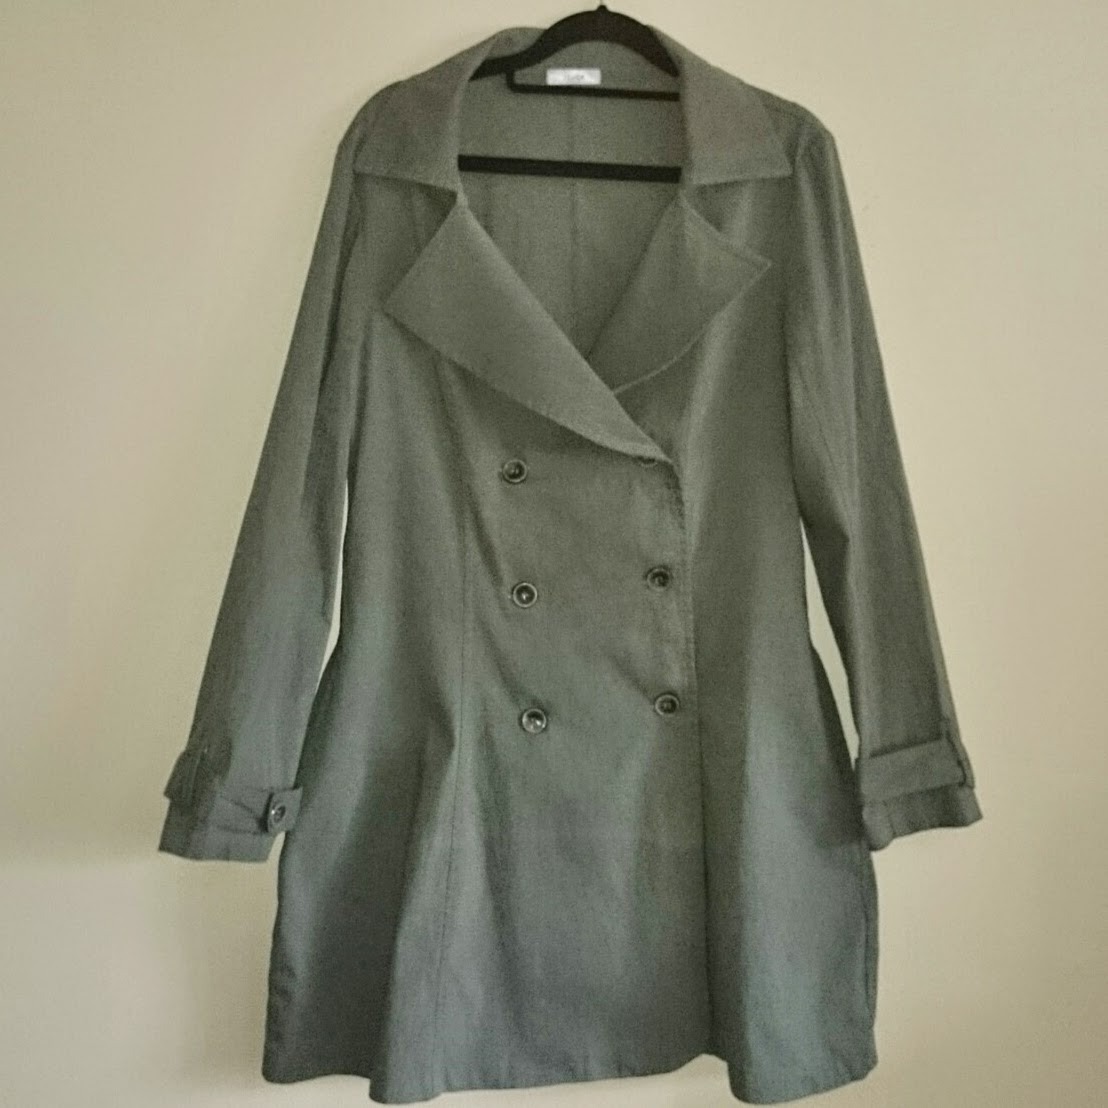 casaco-78-trench-coat-vestido-acinturado-com-botoes-4042 Patchoulee